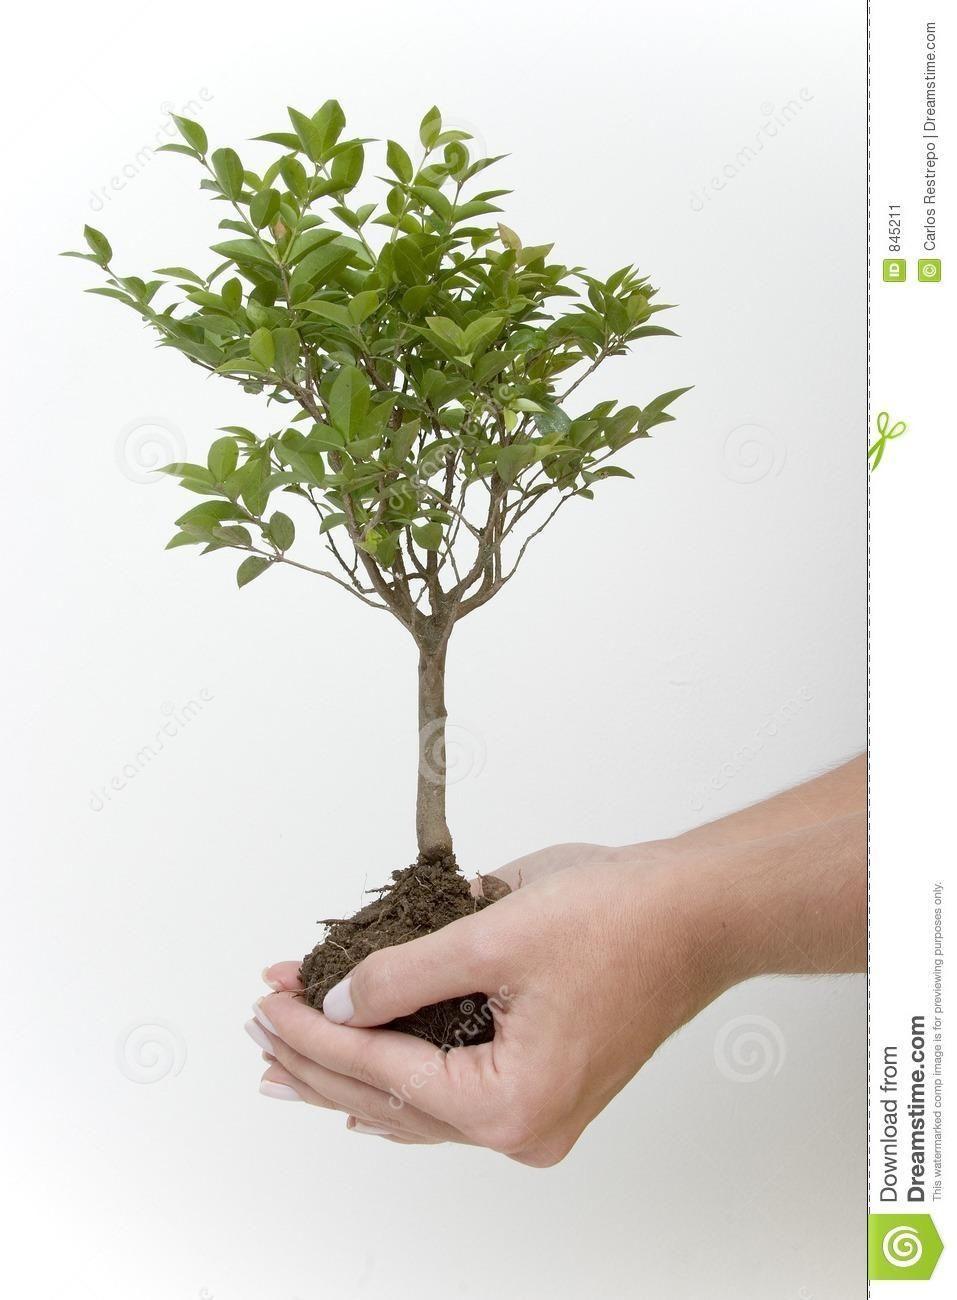 árbol, desde la semilla hasta un árbol adulto, mostraremos las siguientes